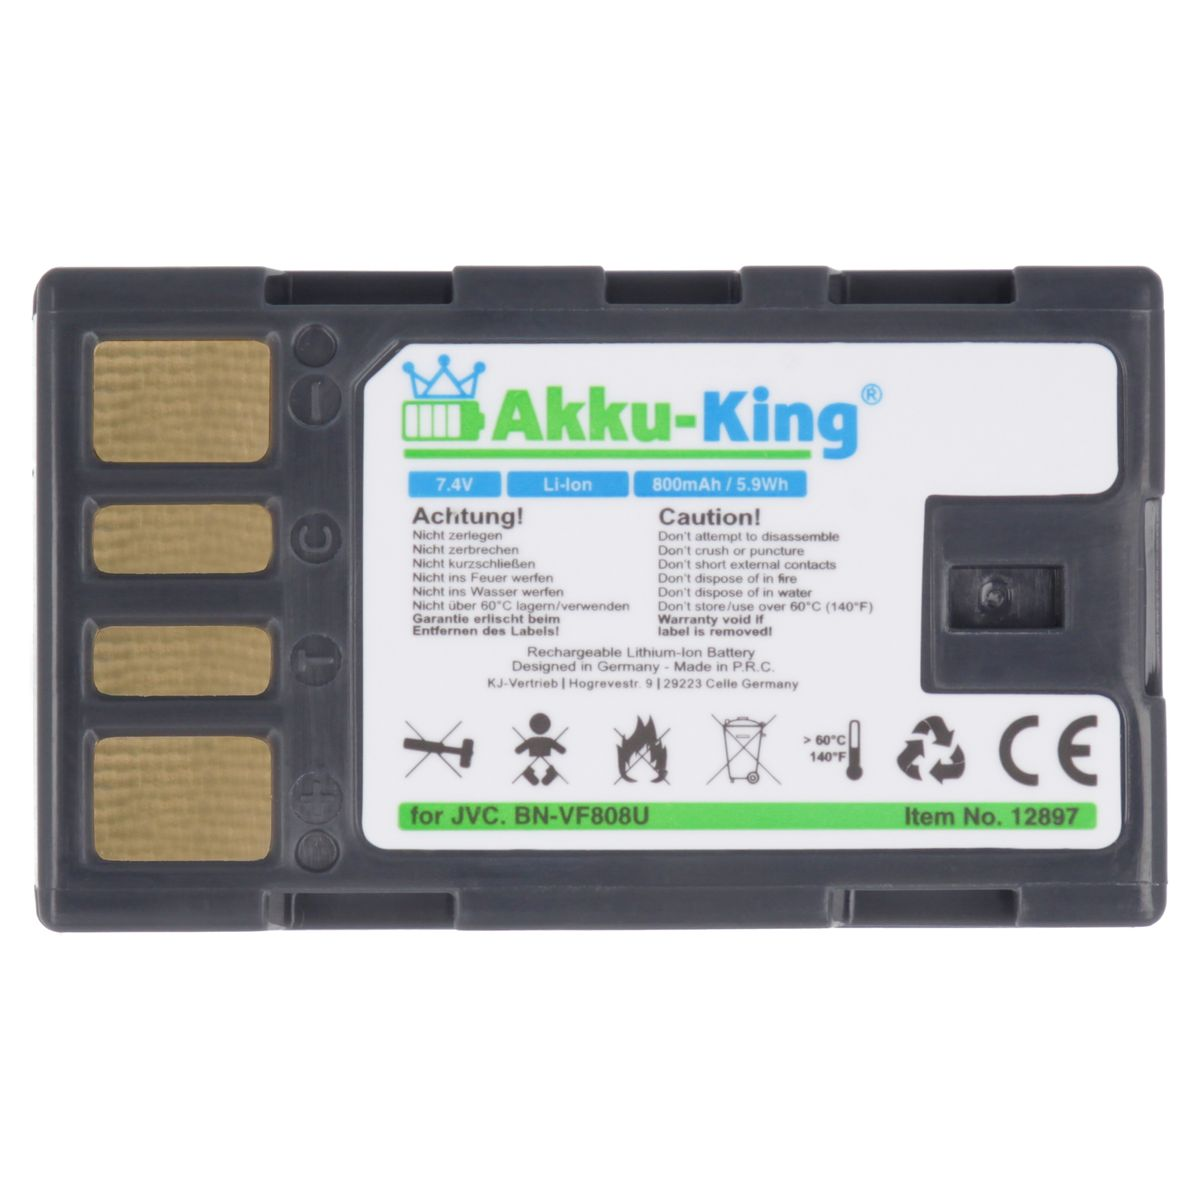 Akku 7.4 mit JVC Volt, Li-Ion AKKU-KING kompatibel BN-VF808U Kamera-Akku, 800mAh